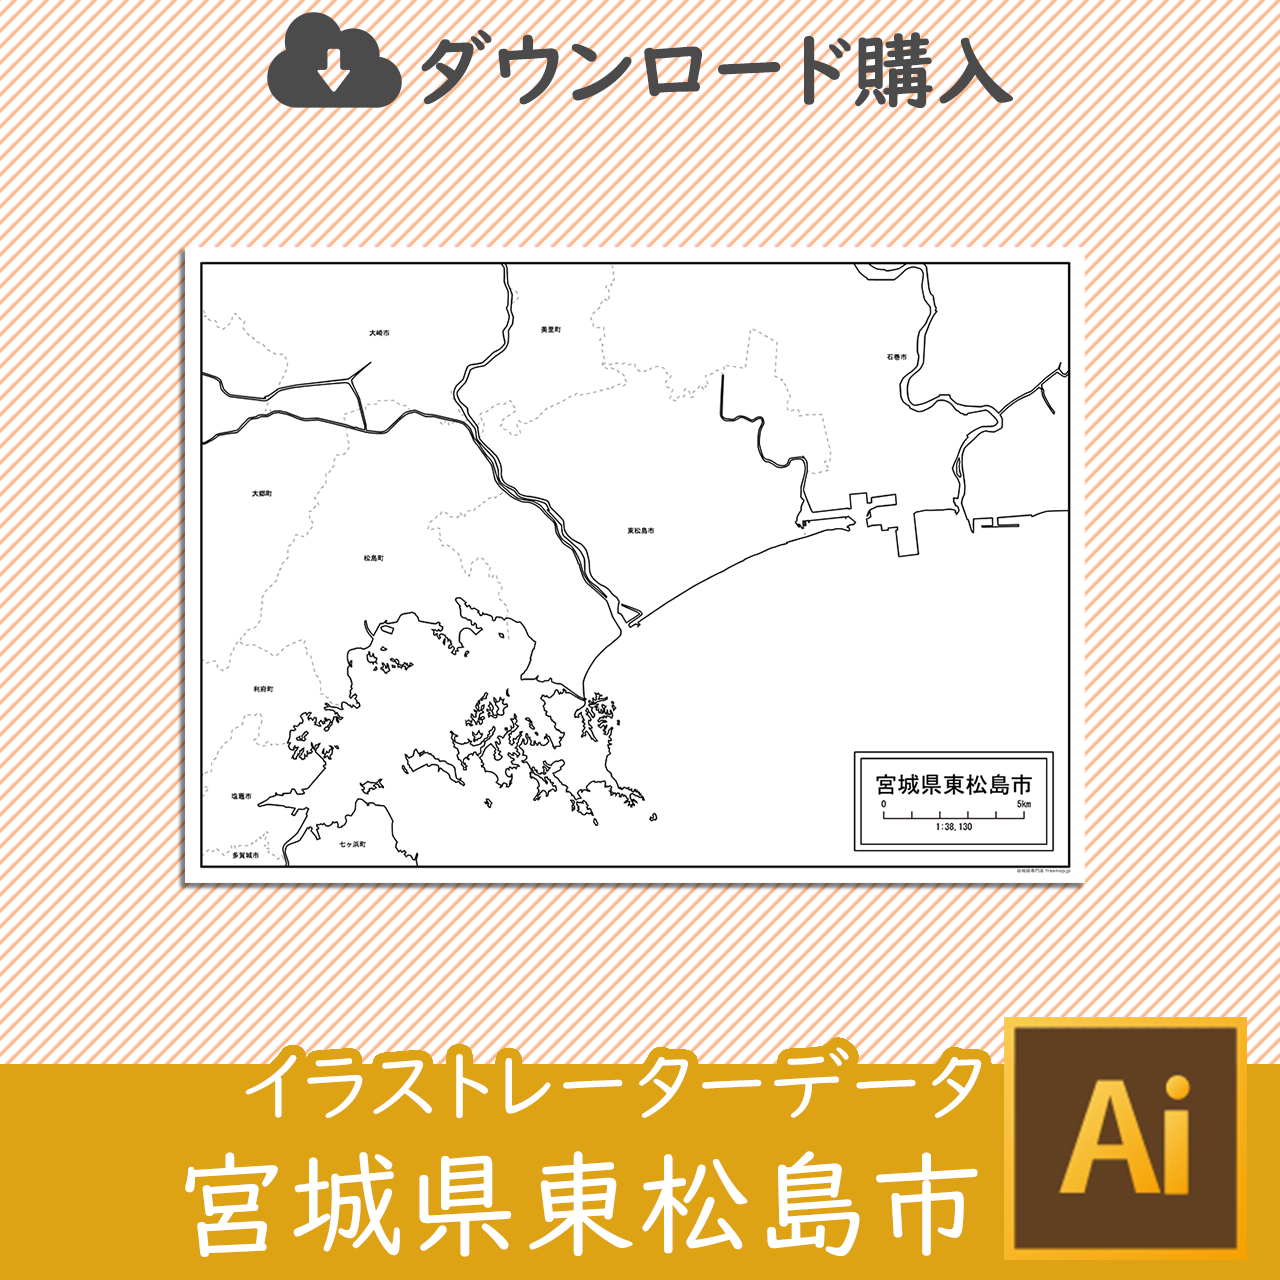 東松島市のサムネイル画像